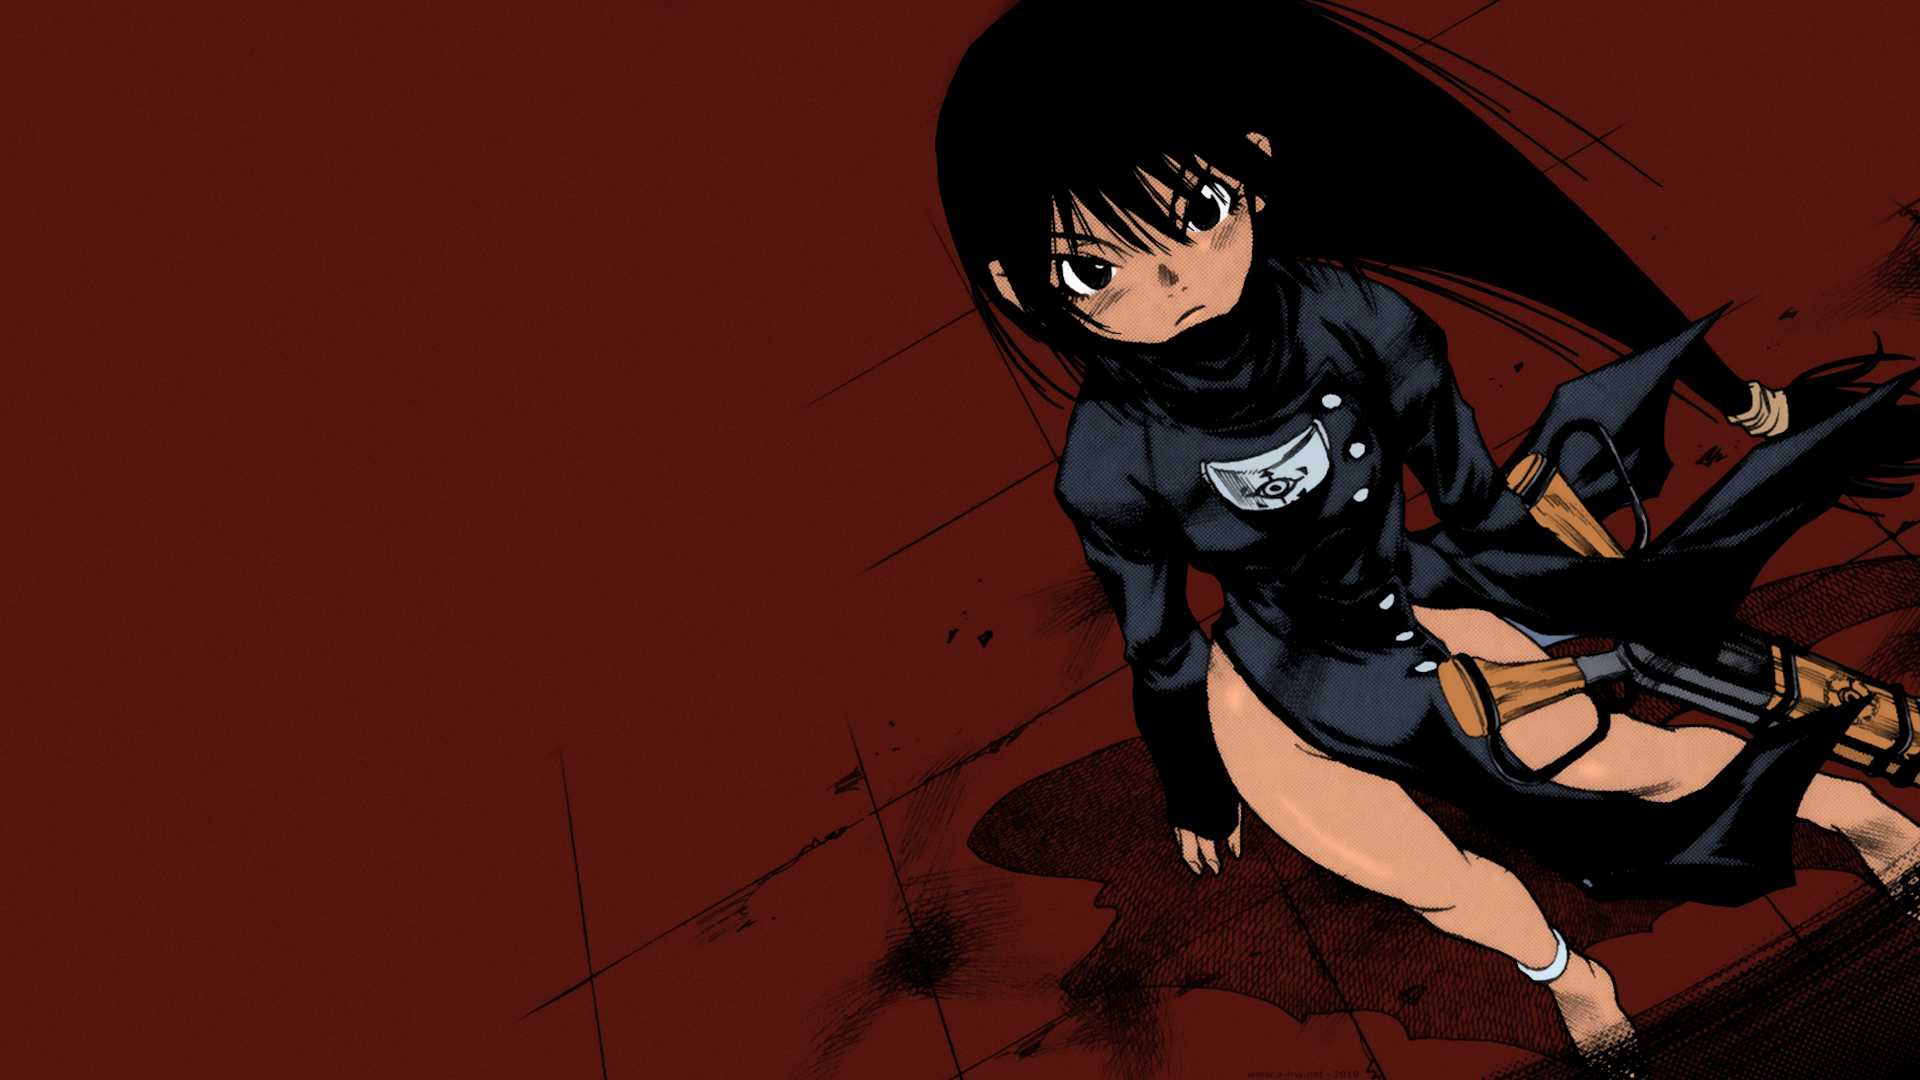 Anime 1920x1080 Vivi long hair black hair tanned gun weapon anime manga anime girls Kamiyadori Kei Sanbe